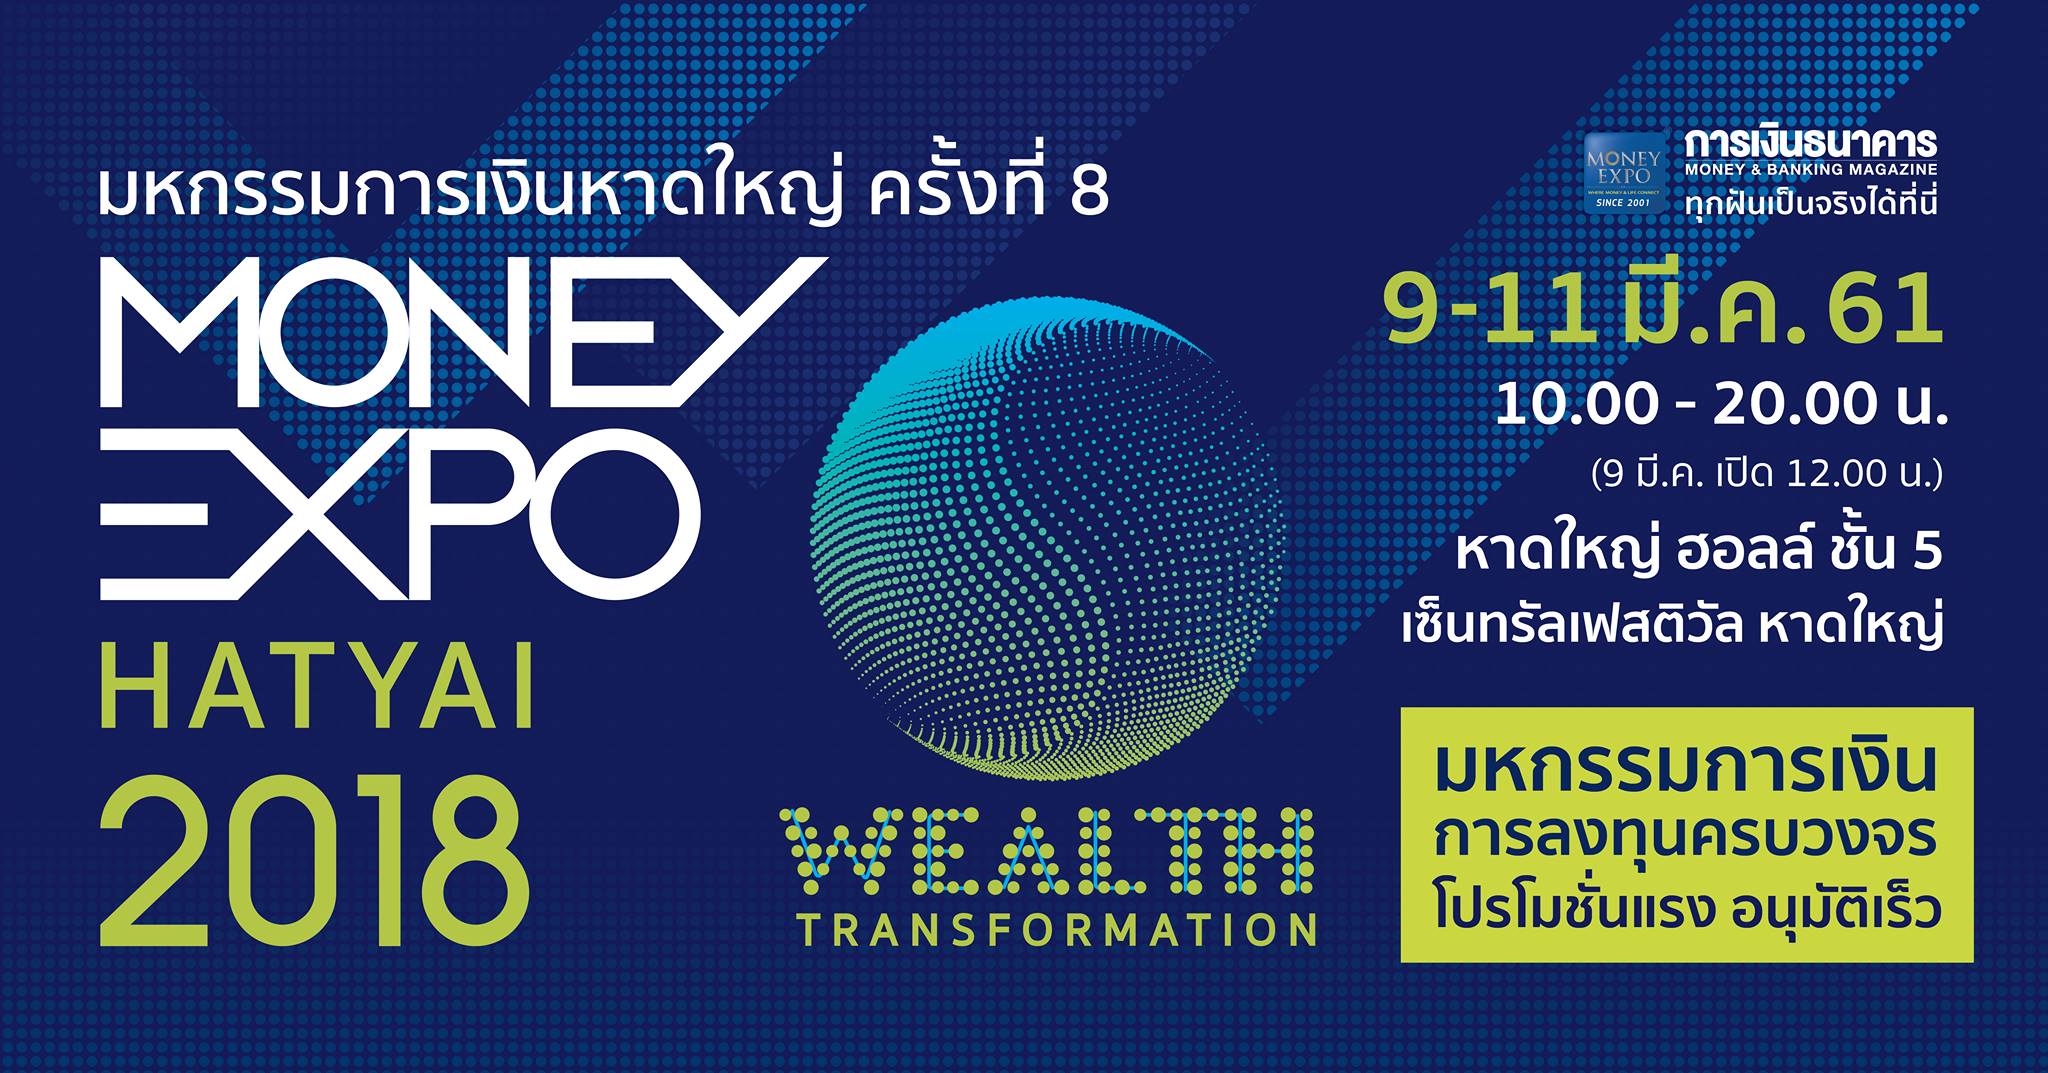 Money Expo Hatyai 2018